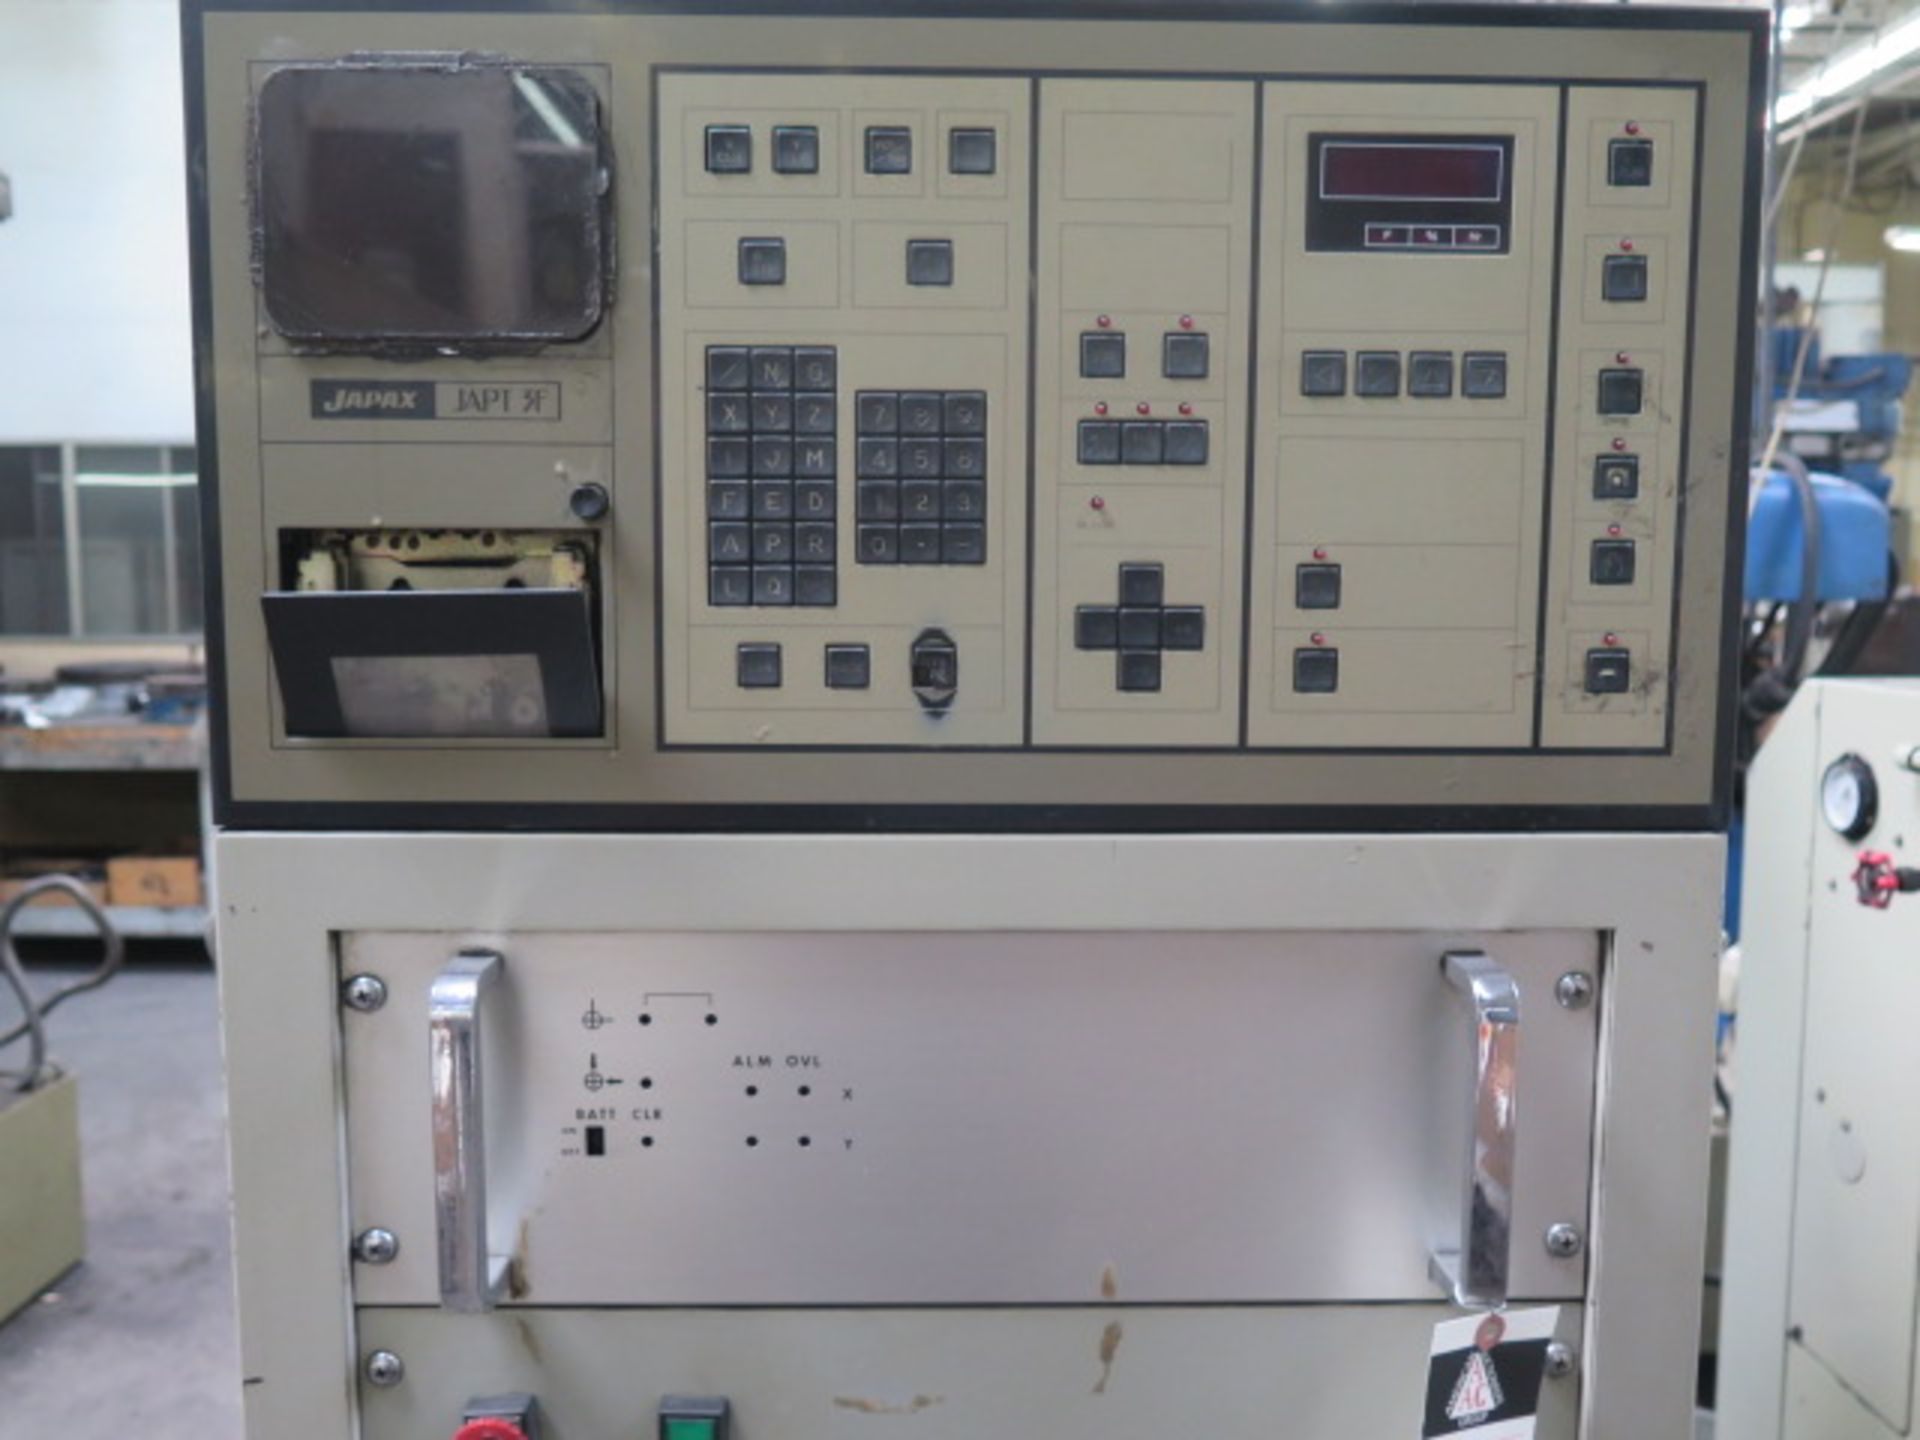 Japax “Electroder” EMM30 2-Station NC Electrode Cutting Machine s/n E18-01-115 w/ JAPT-3F - Image 4 of 11